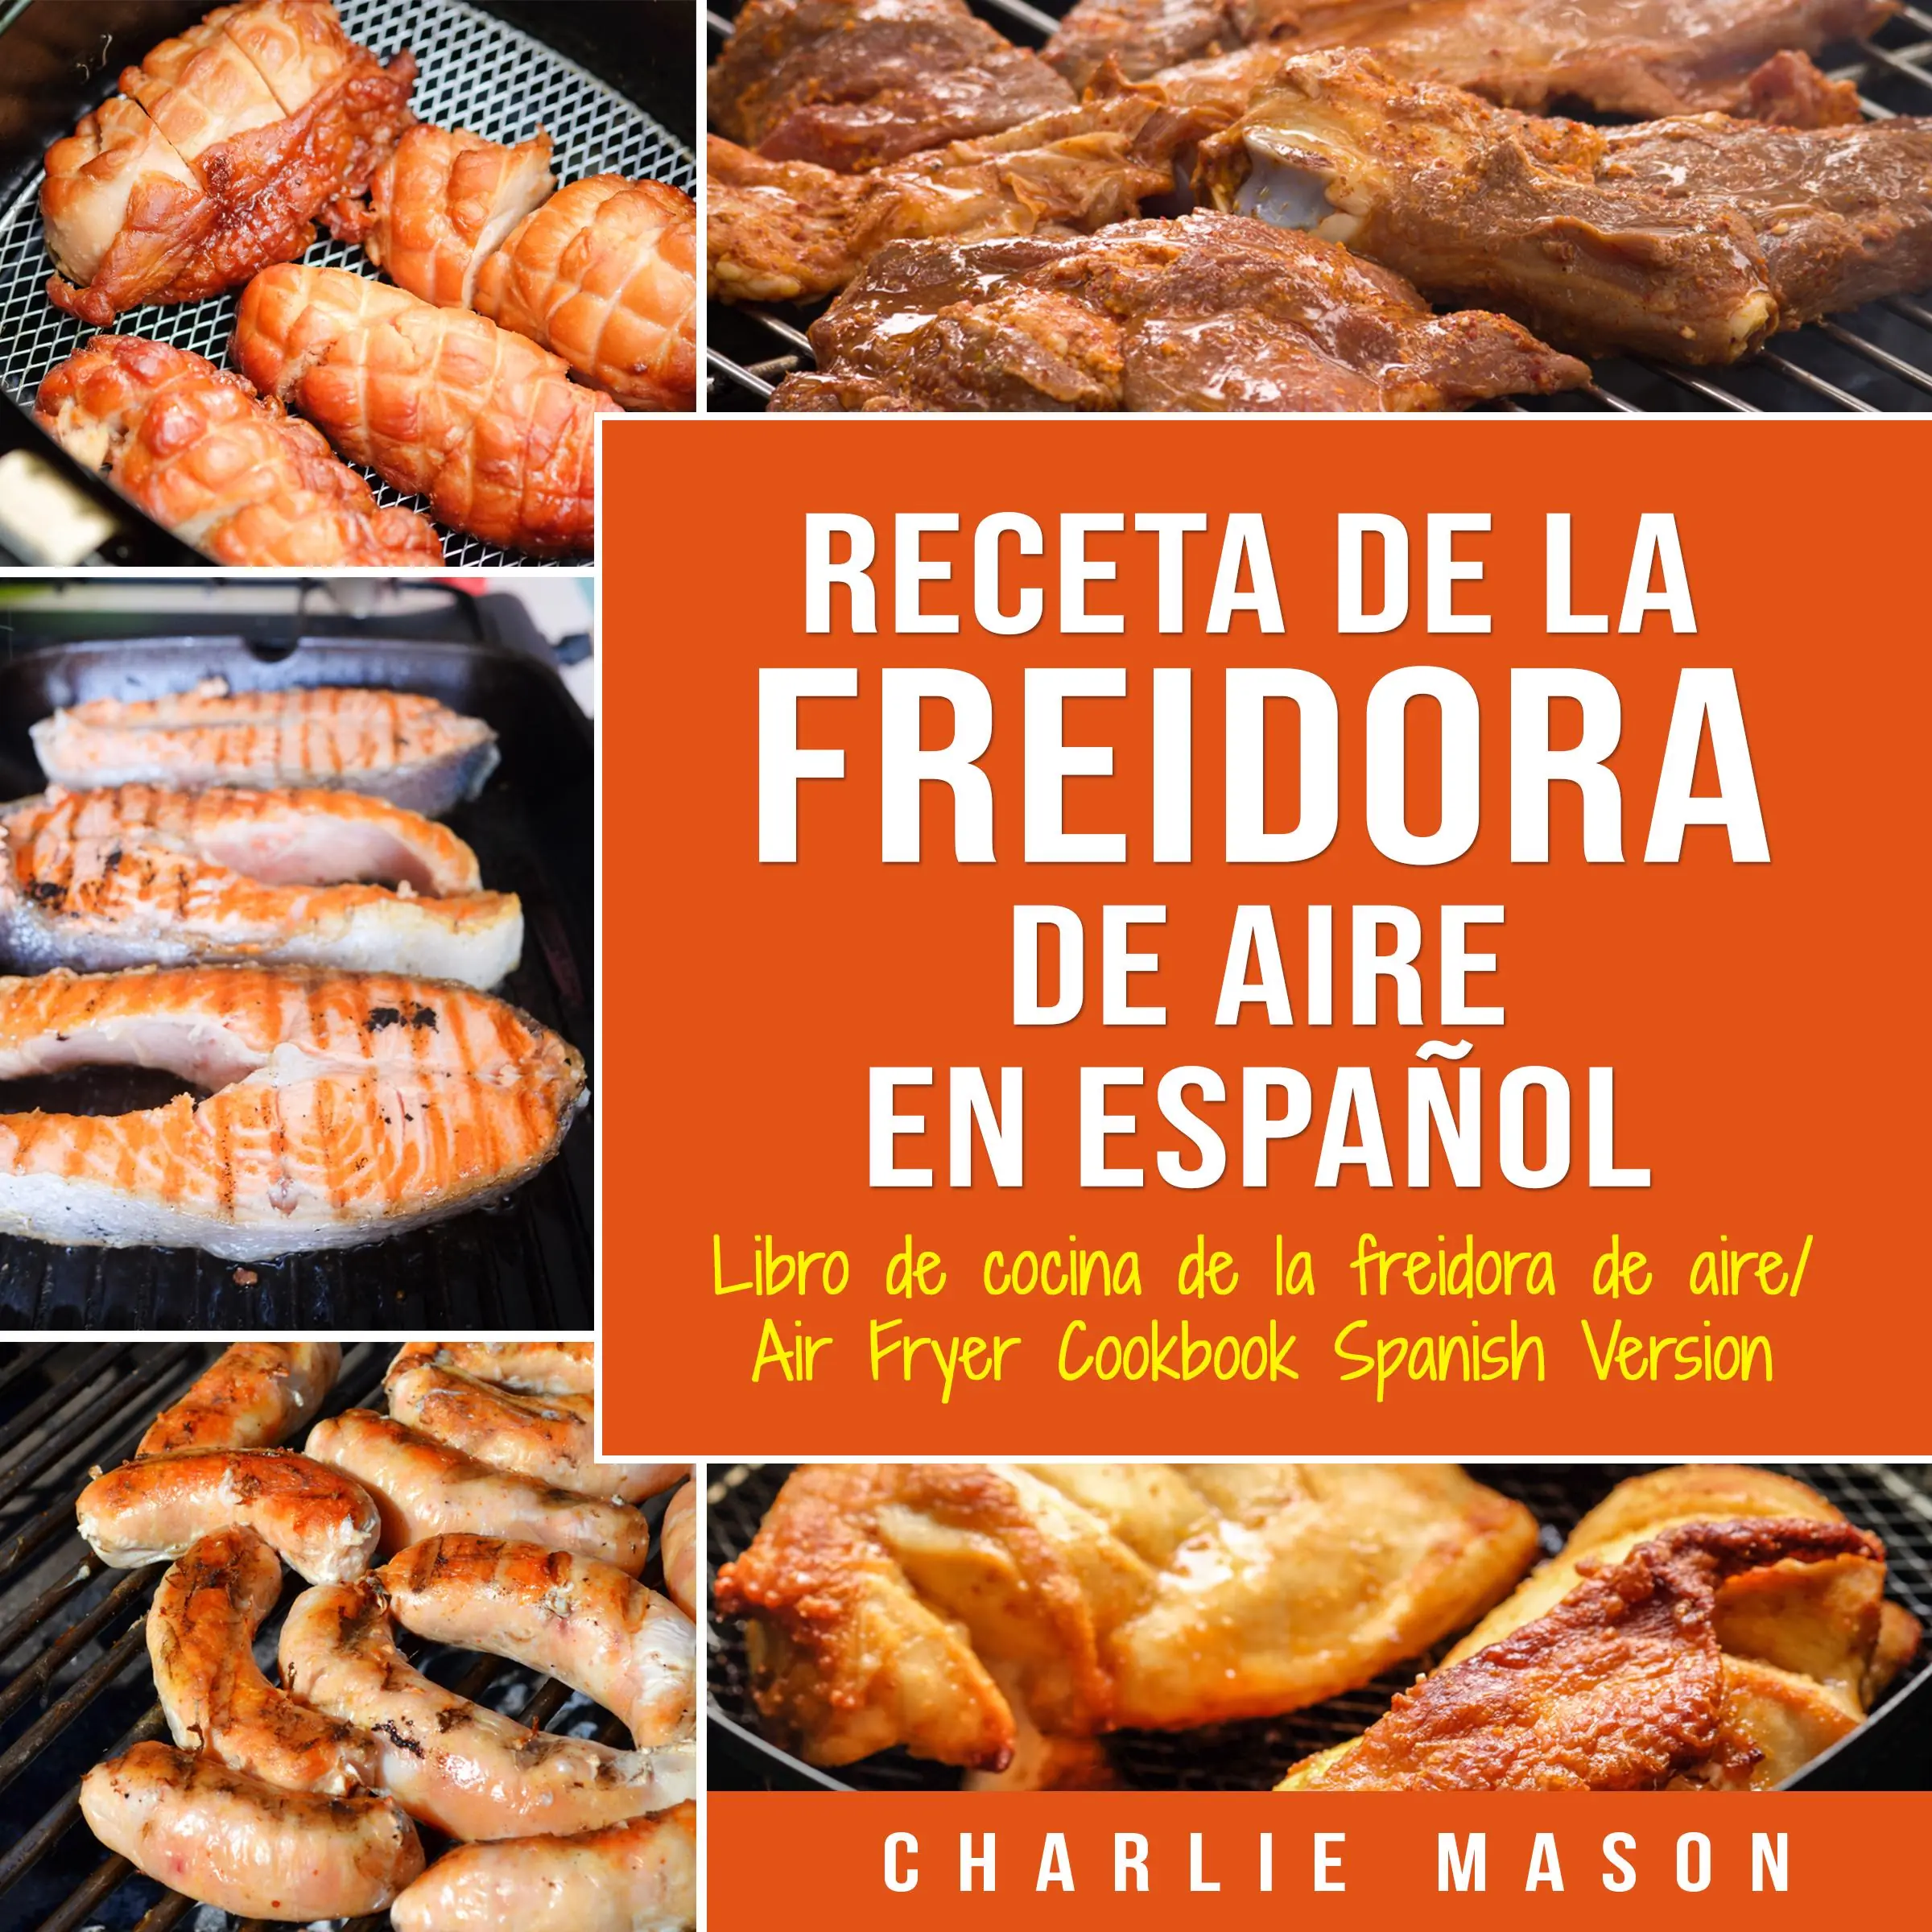 Recetas de Cocina con Freidora de Aire En Español/ Air Fryer Cookbook Recipes In Spanish Audiobook by Charlie Mason